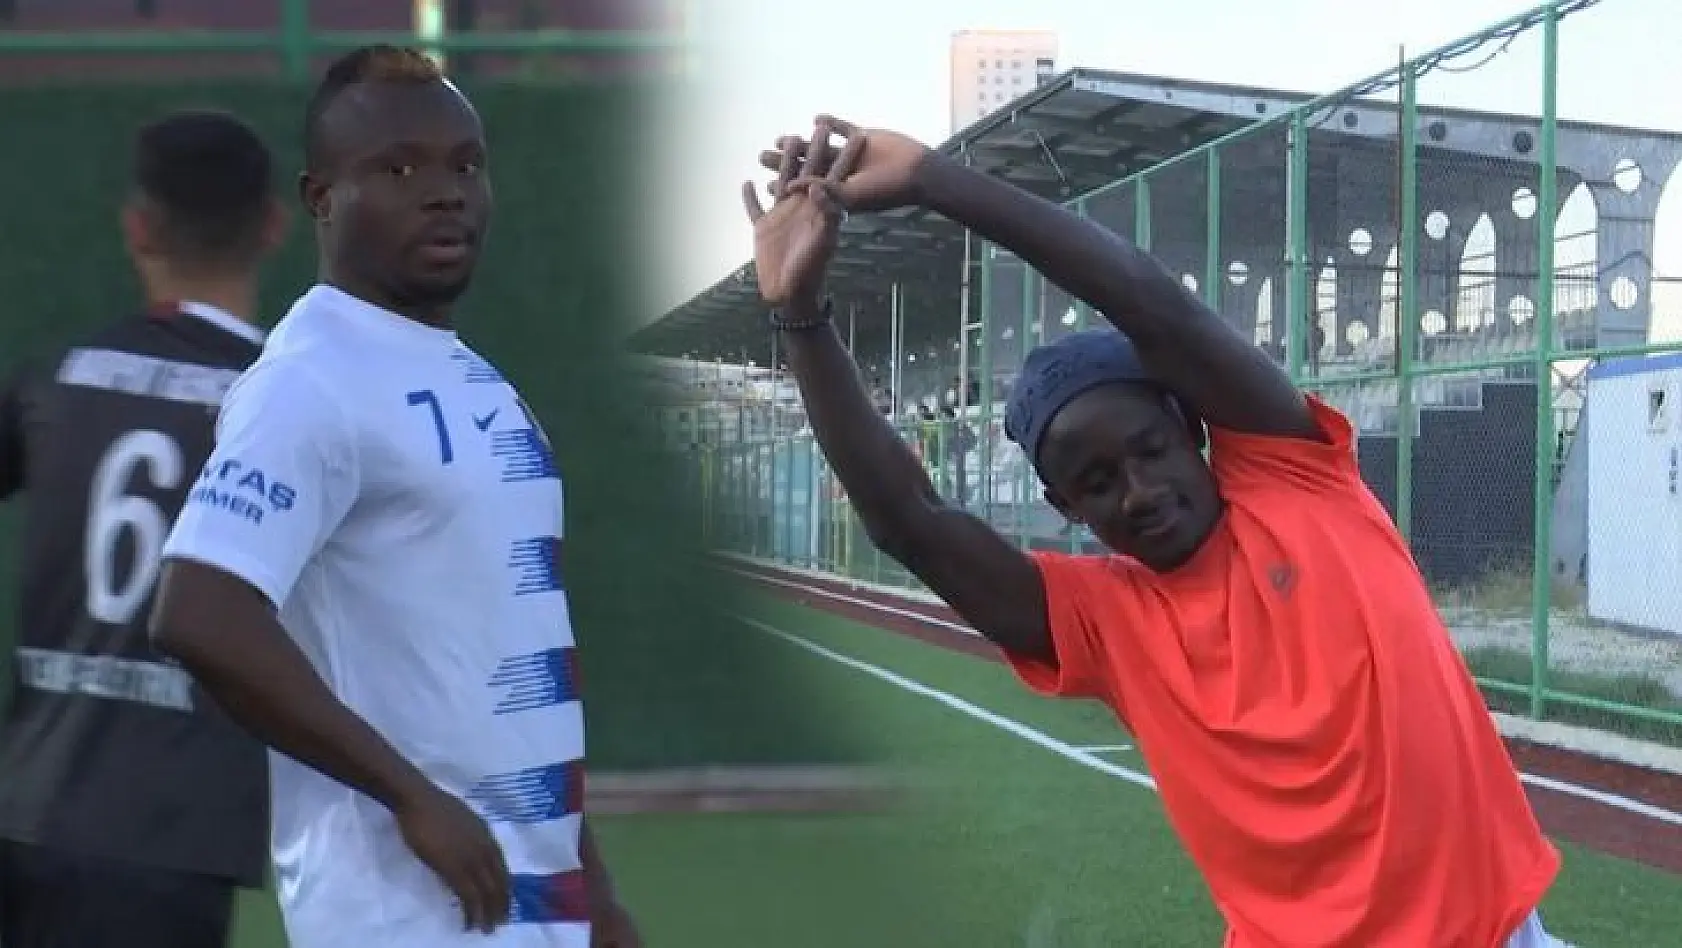 Elazığ'a gelen Afrikalı öğrencilerin hayali futbolcu olmak